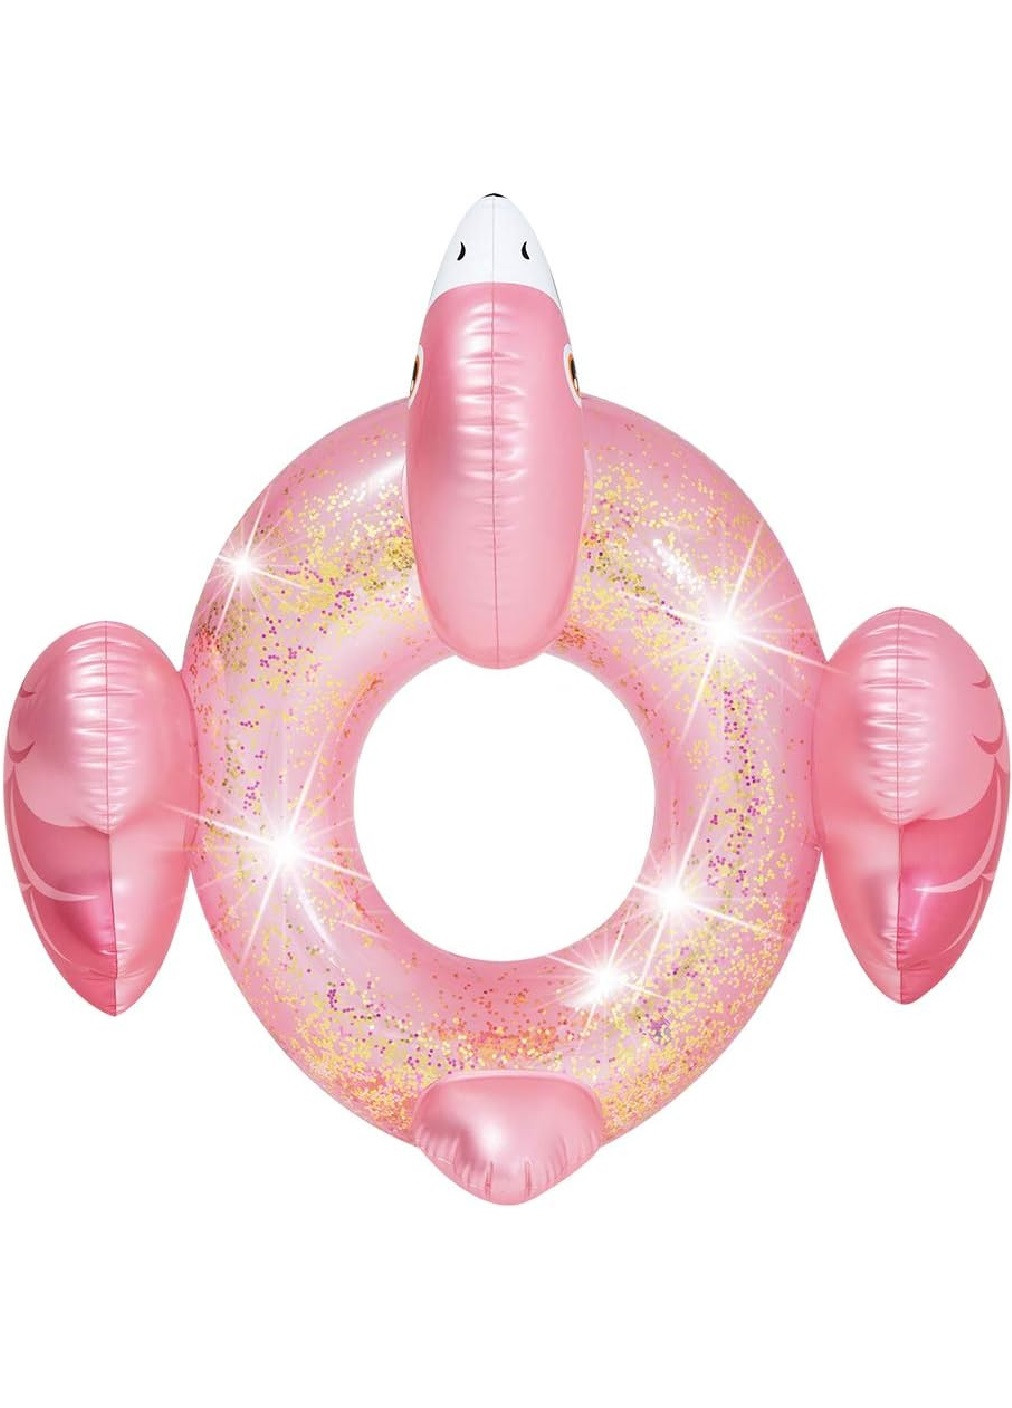 Надувной одноместный круг для плавания в бассейне на пляже для детей взрослых 99х89х71 см (474834-Prob) Фламинго перламутровый Unbranded (259960435)